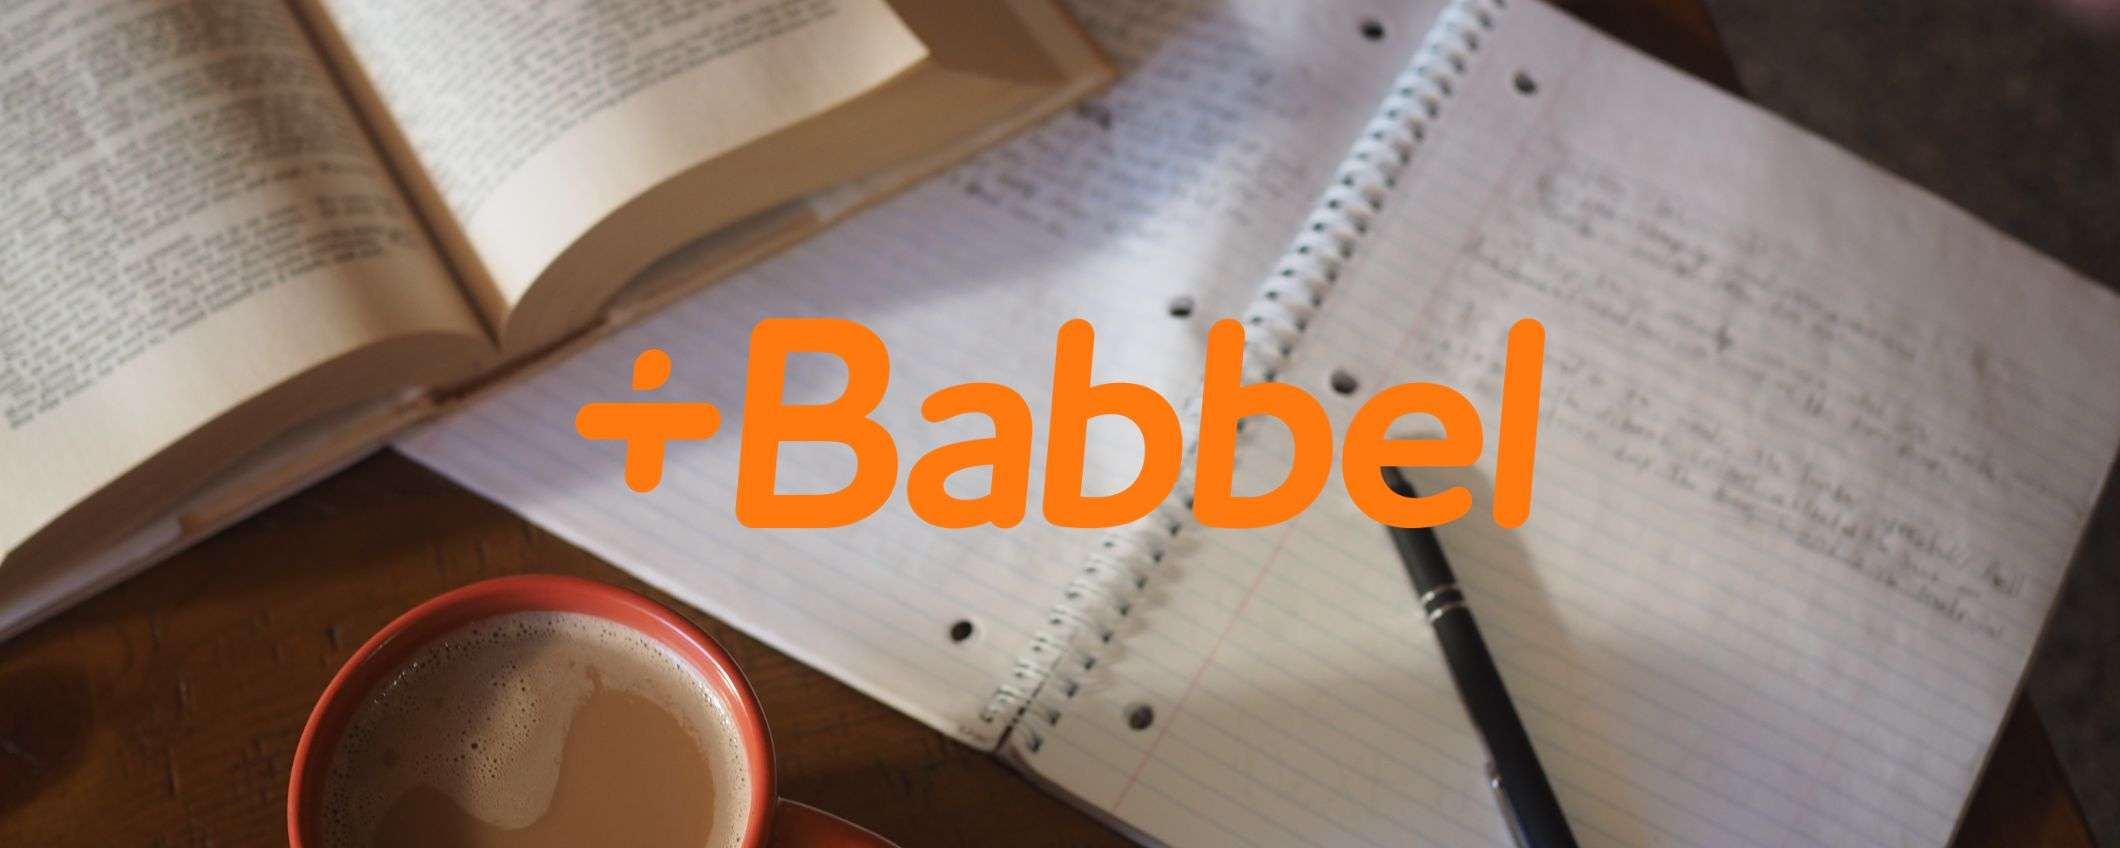 Babbel, impara al tuo ritmo con corsi creati da esperti: oggi a -50%